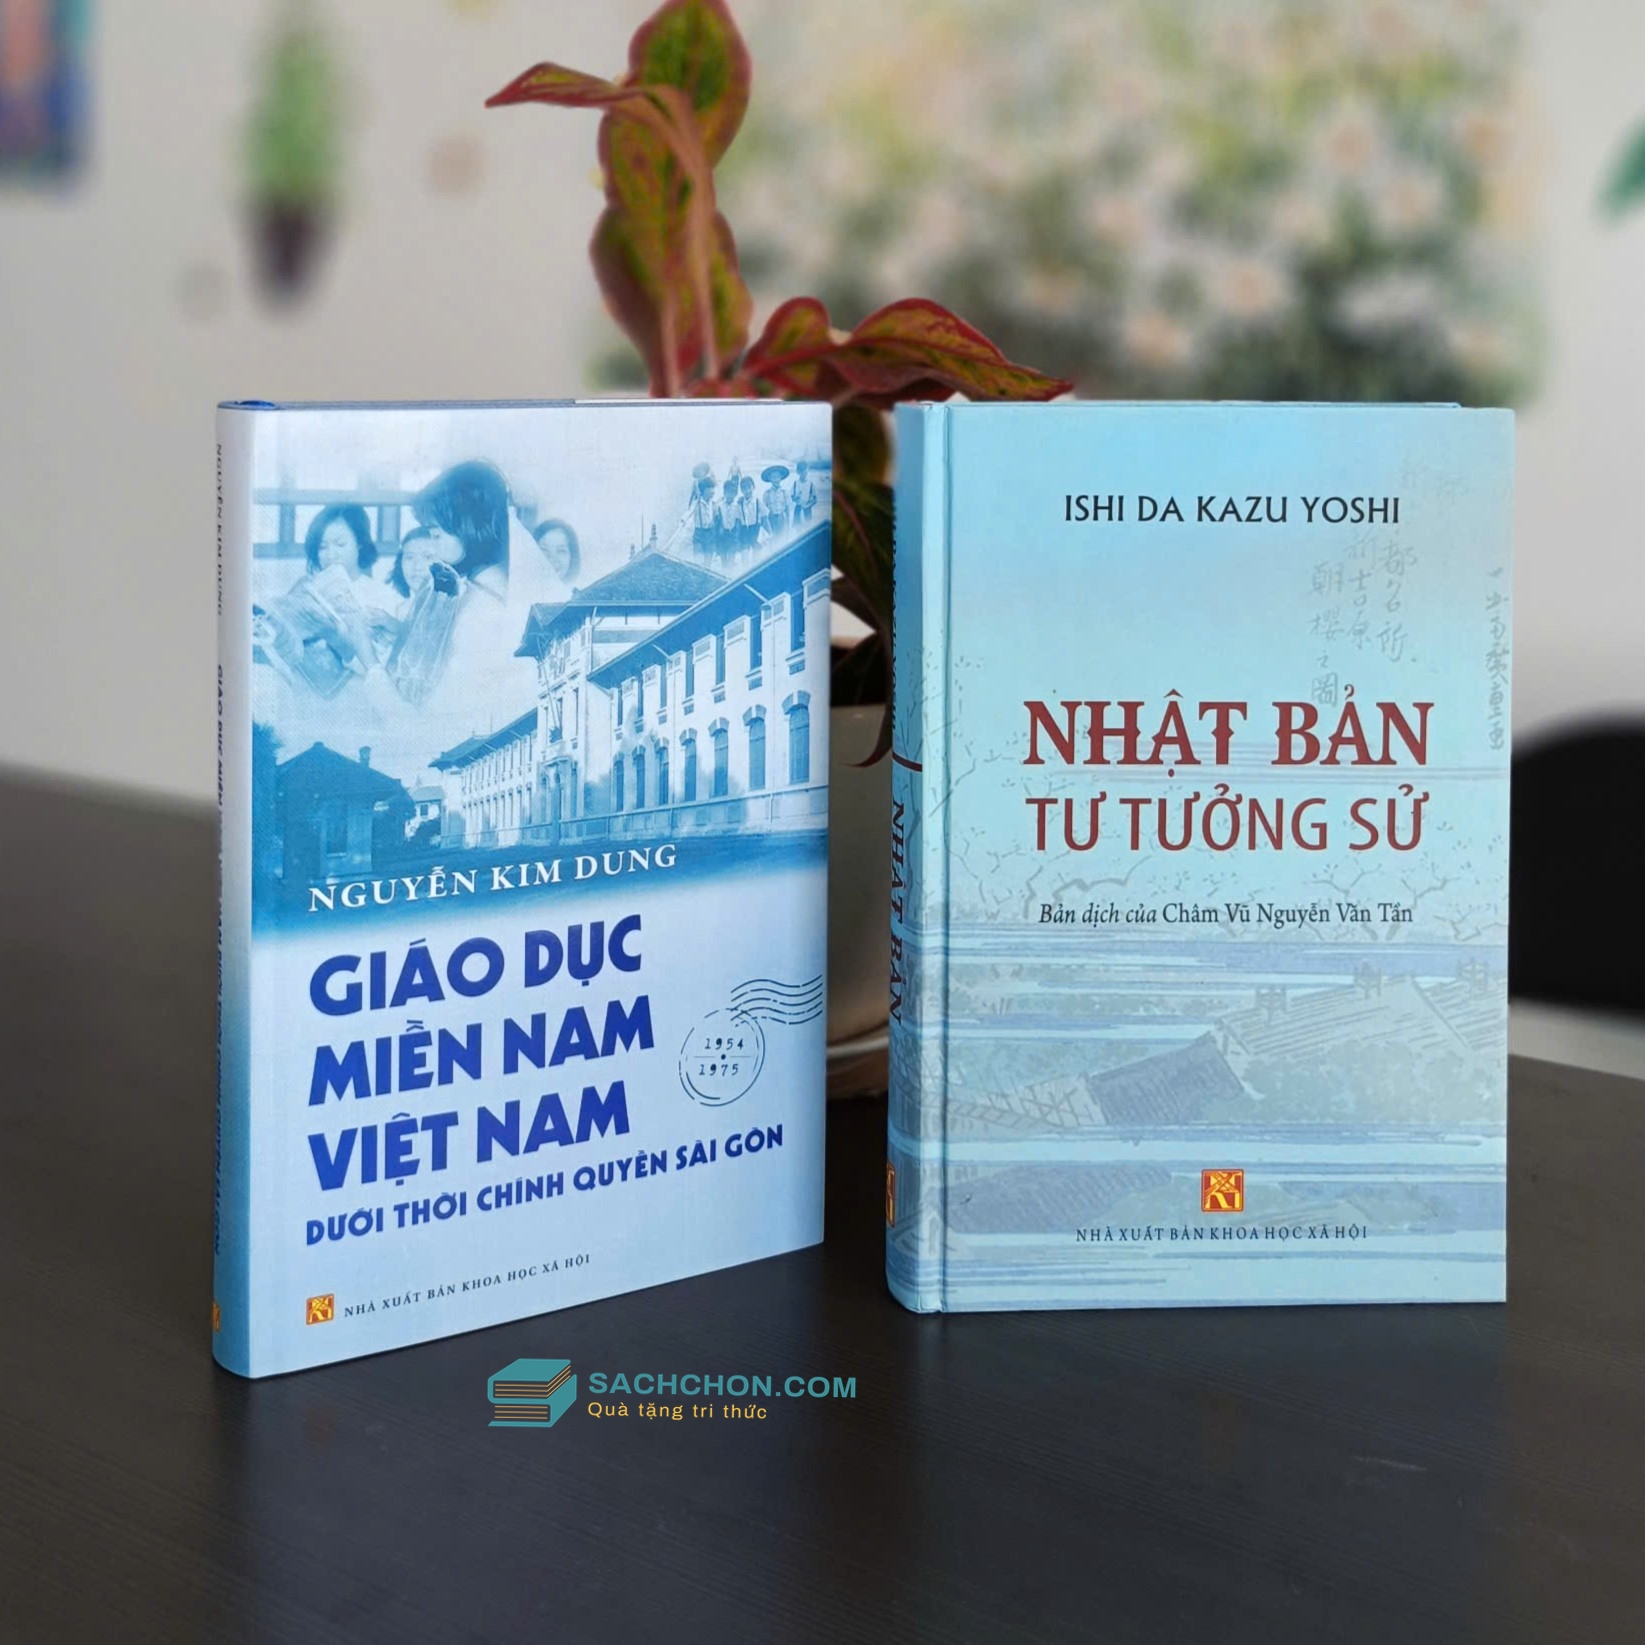 Giáo Dục Miền Nam Việt Nam Dưới Thời Chính Quyền Sài Gòn + Nhật Bản Tư Tưởng Sử (2 quyển)